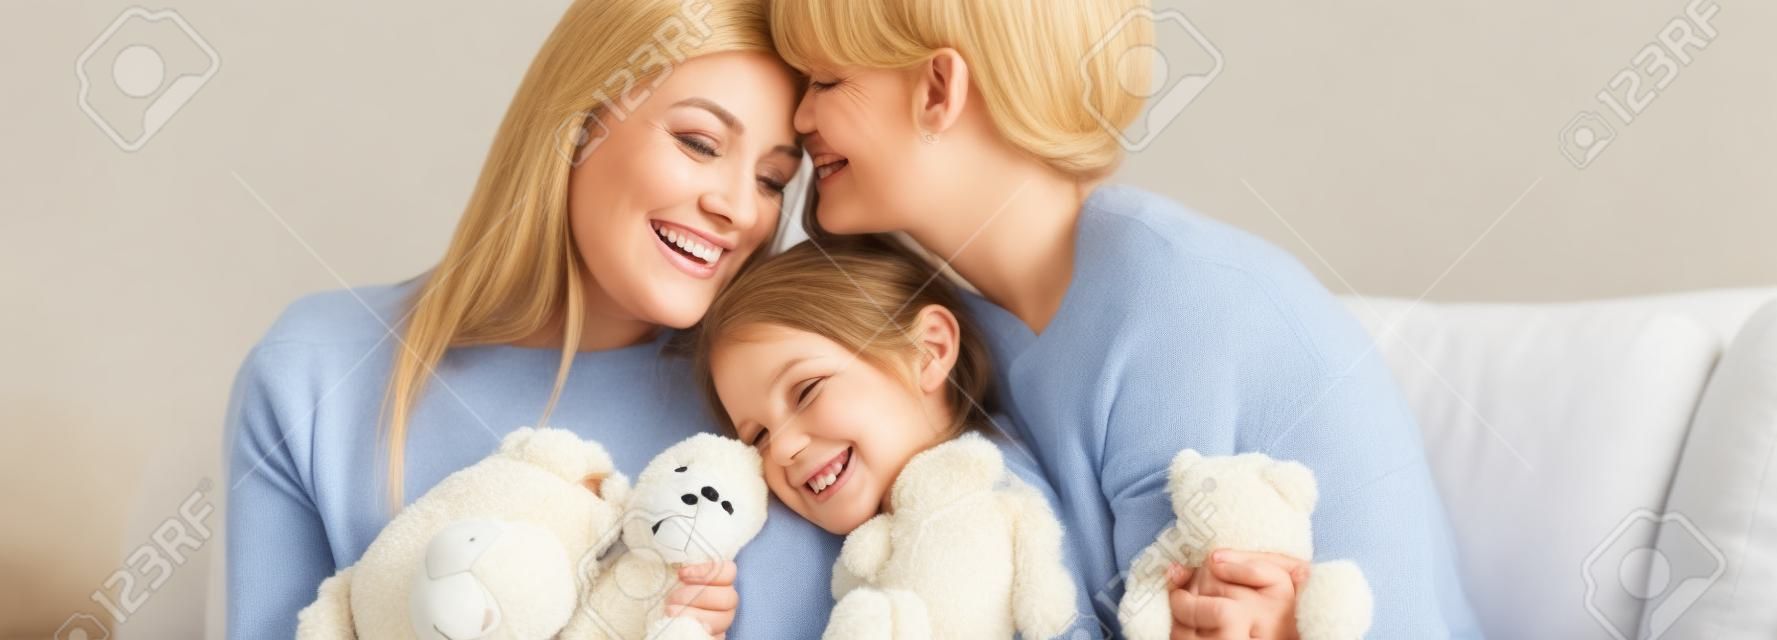 Gelukkige moeders omhelzen glimlachende dochter met teddybeer op de bank, panoramisch schot